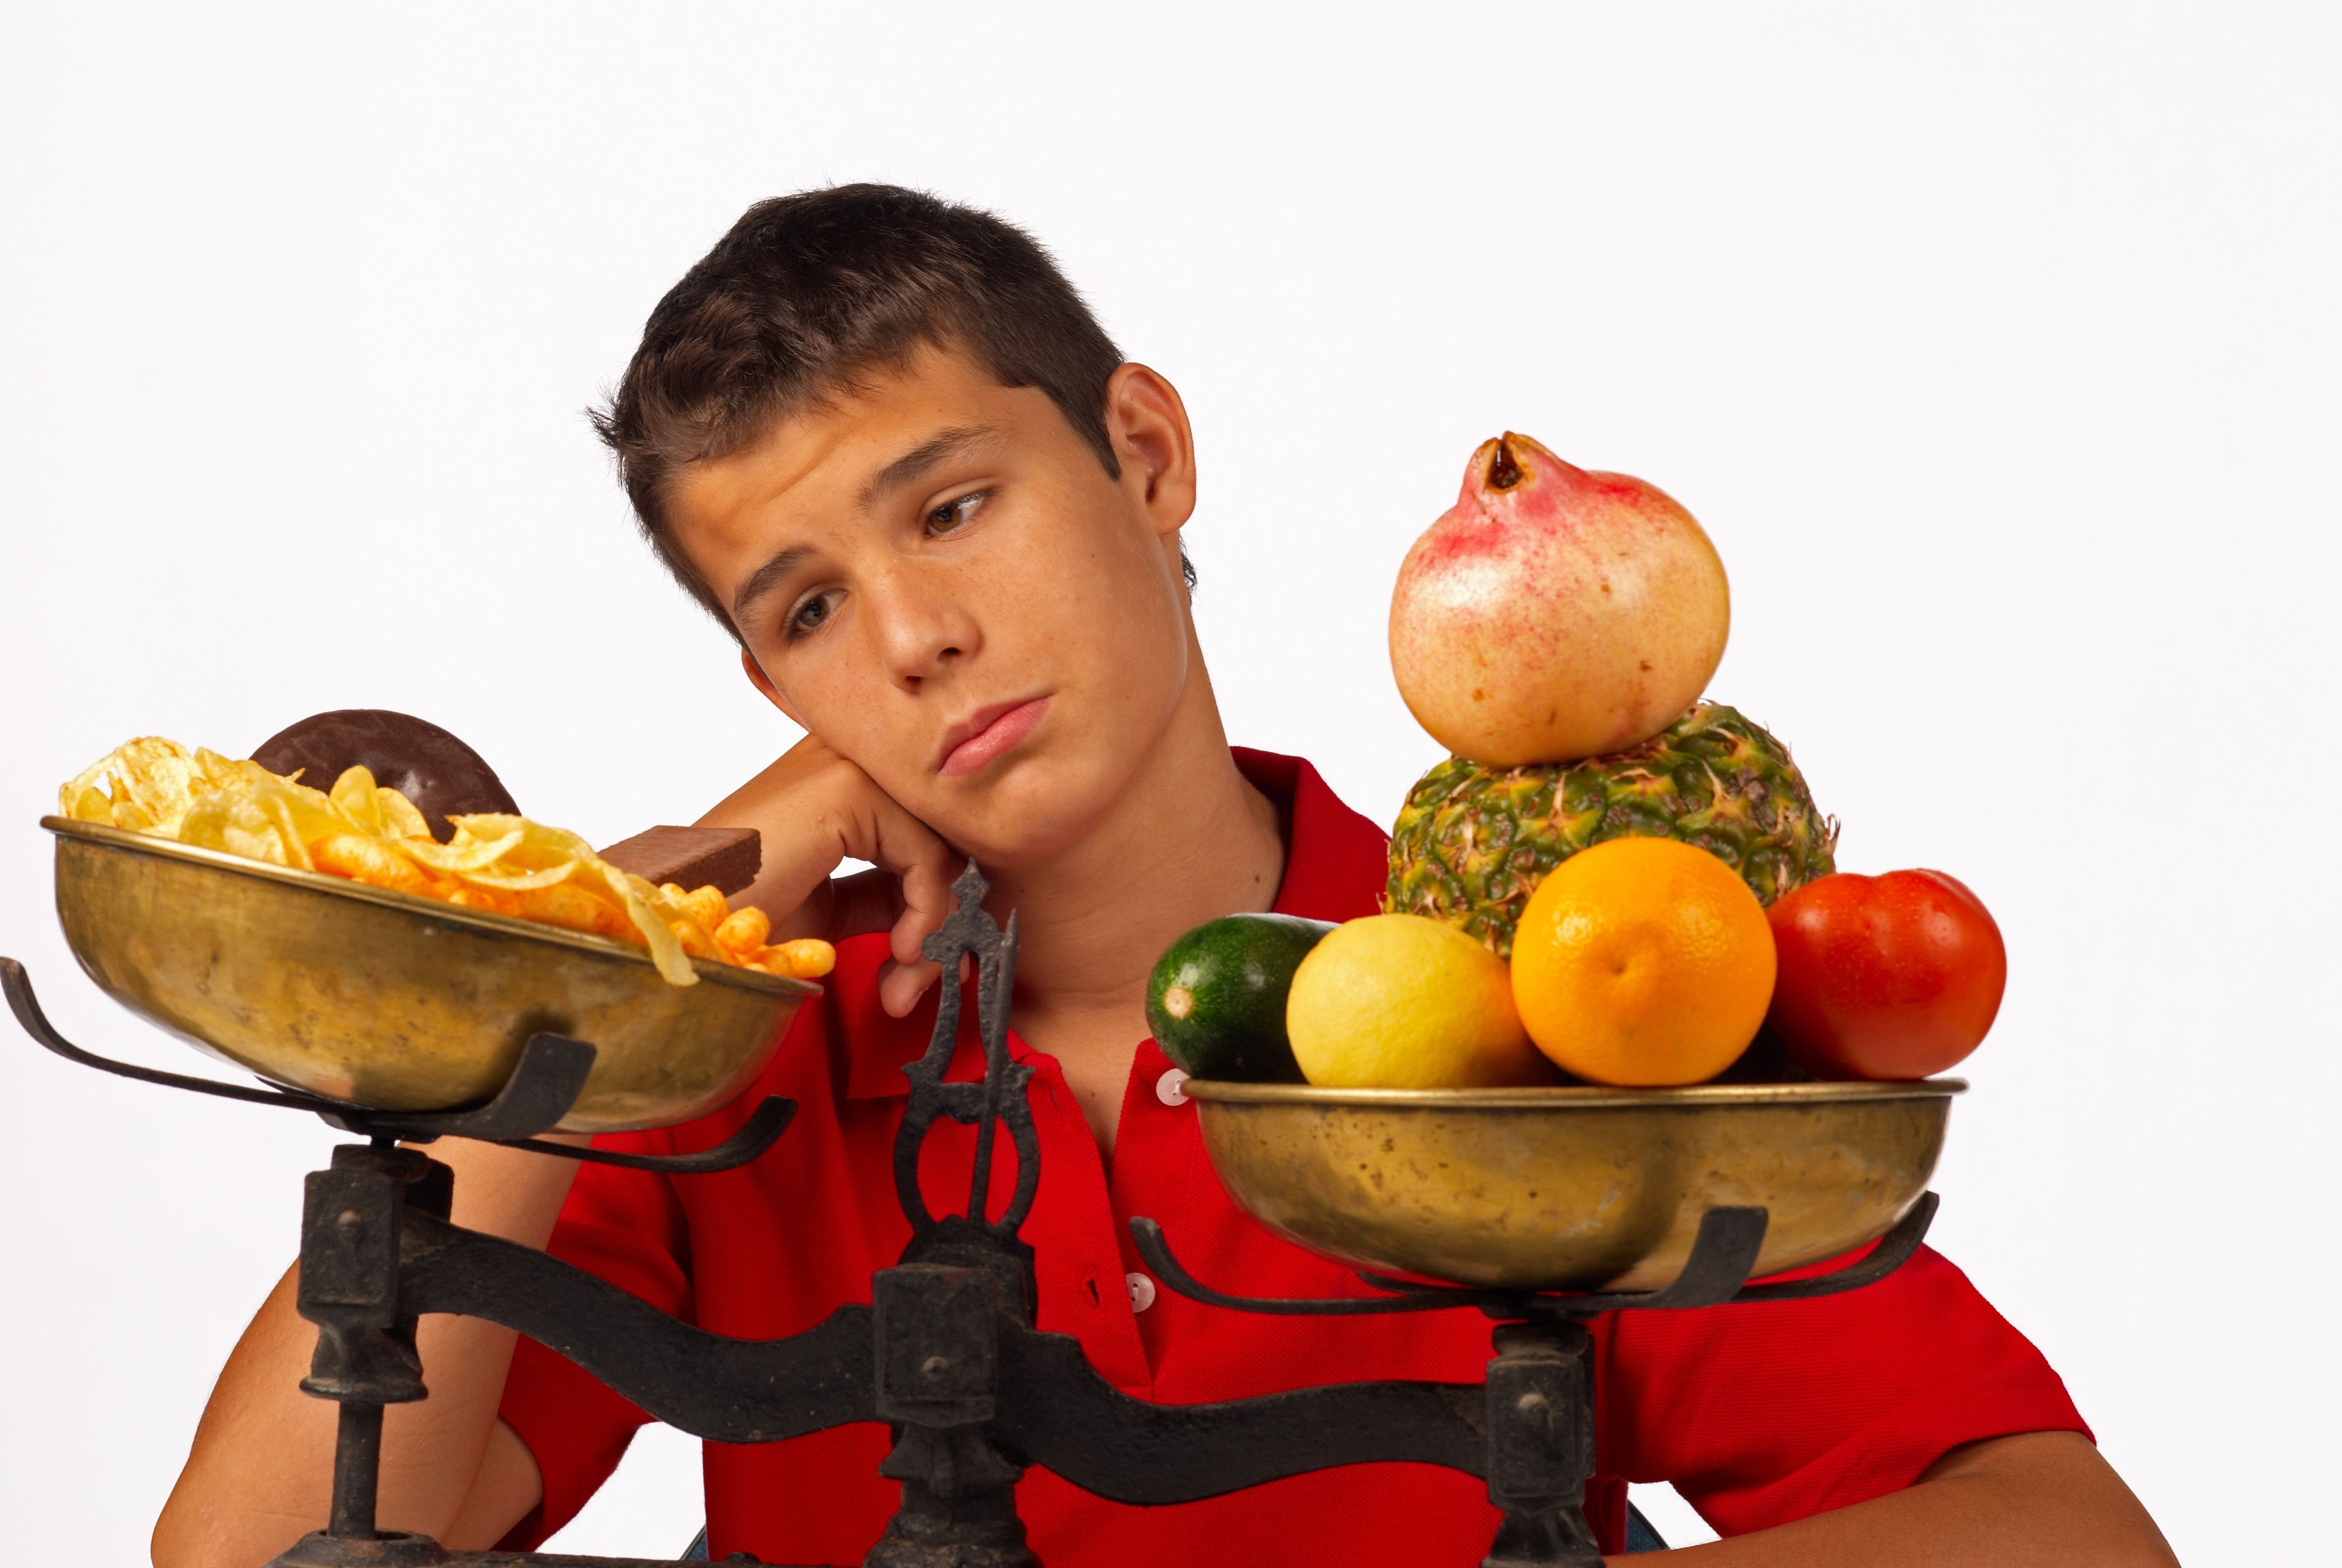 Правильное Питание Для Здоровья Подростка